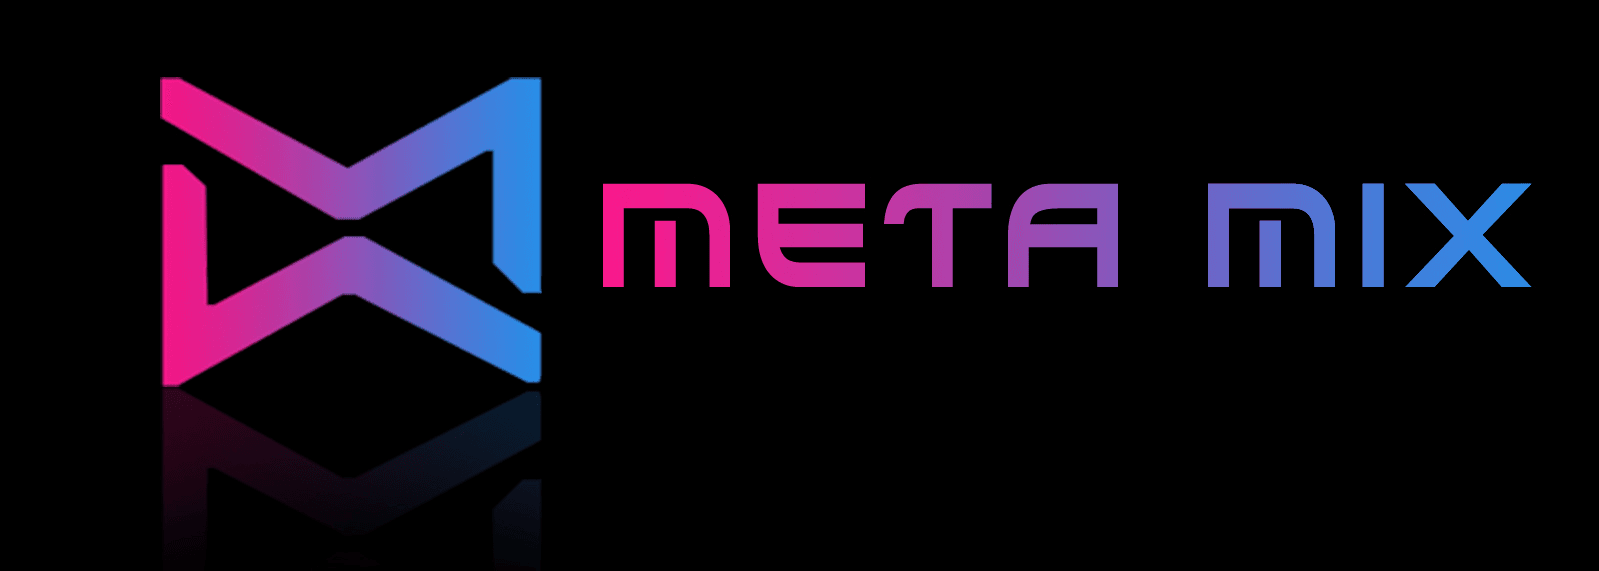 METAMIX_NFTs 横幅